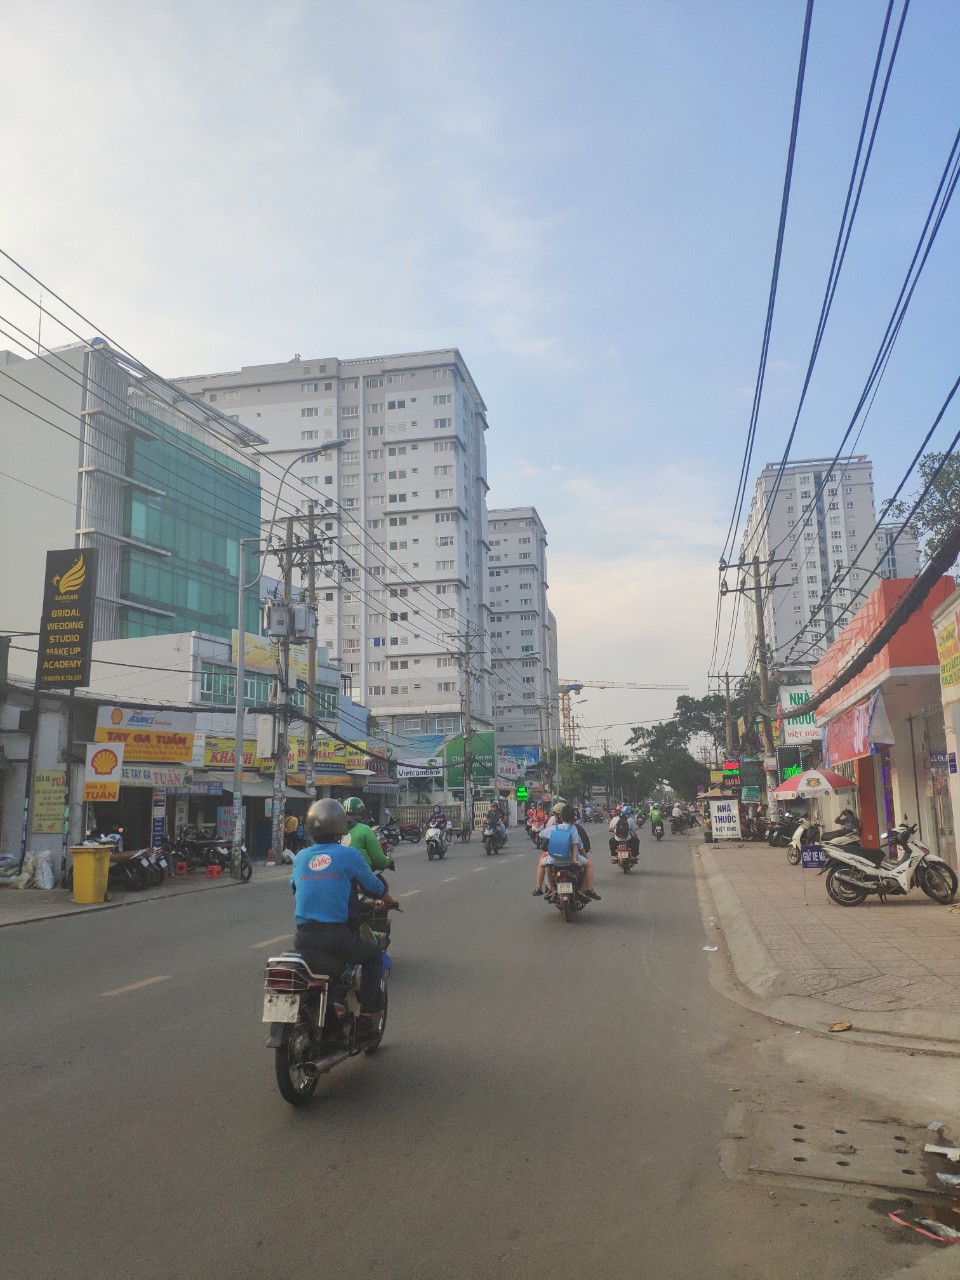 Bán nhà mới đường Nguyễn Xí, P. 26, quận Bình Thạnh, 1 trệt 2 lầu, giá 5.8 tỷ, liên hệ: 0903074322